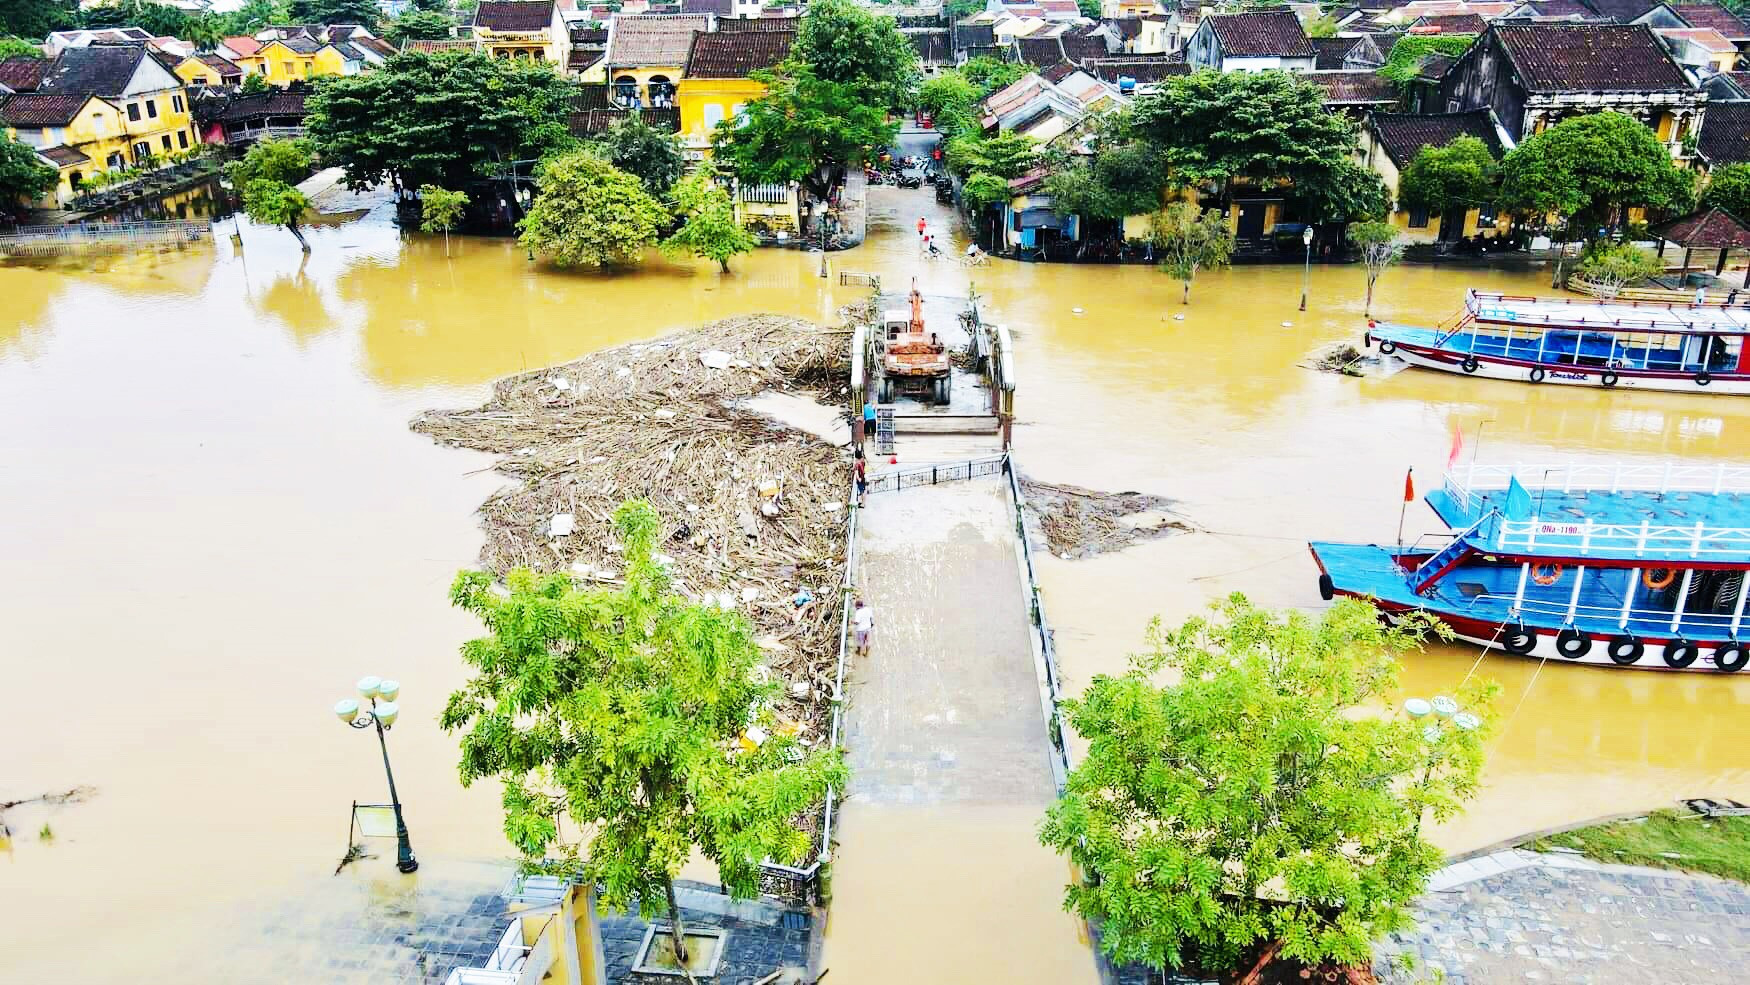 Vùng hạ lưu của lưu vực sông Vu Gia - Thu Bồn thường xuyên chịu tác động nặng nề của lũ lụt nên rất cần sự điều phối kịp thời, hiệu quả của các bên liên quan để giảm thiểu thiệt hại. Ảnh: Q.T